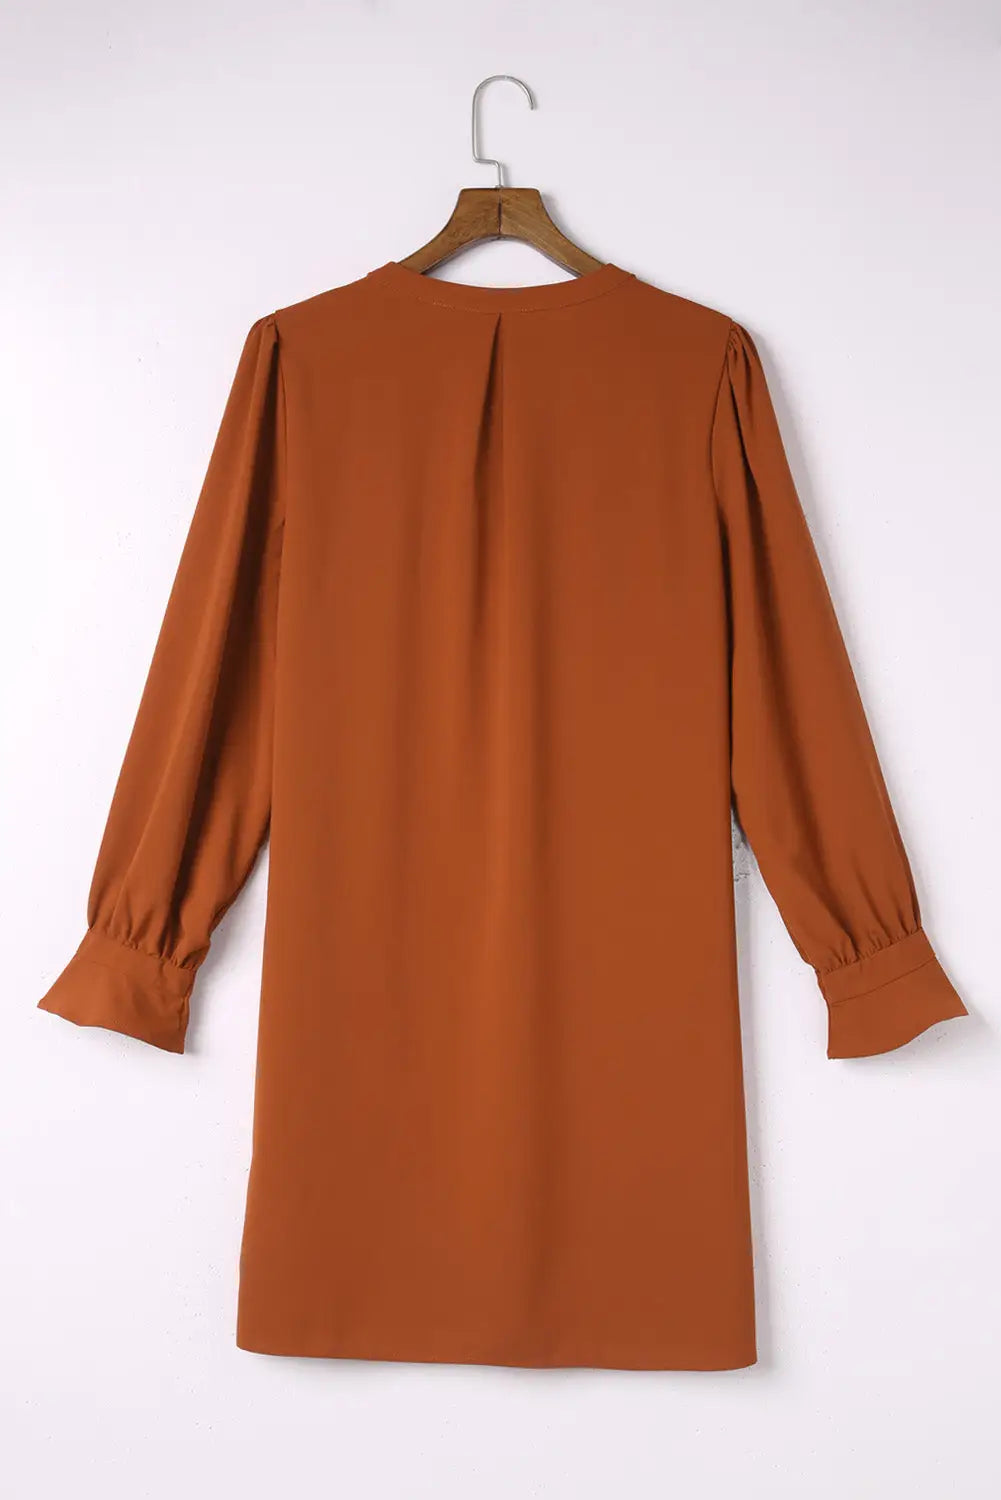 Black split v neck ruffled sleeves shirt dress - mini dresses